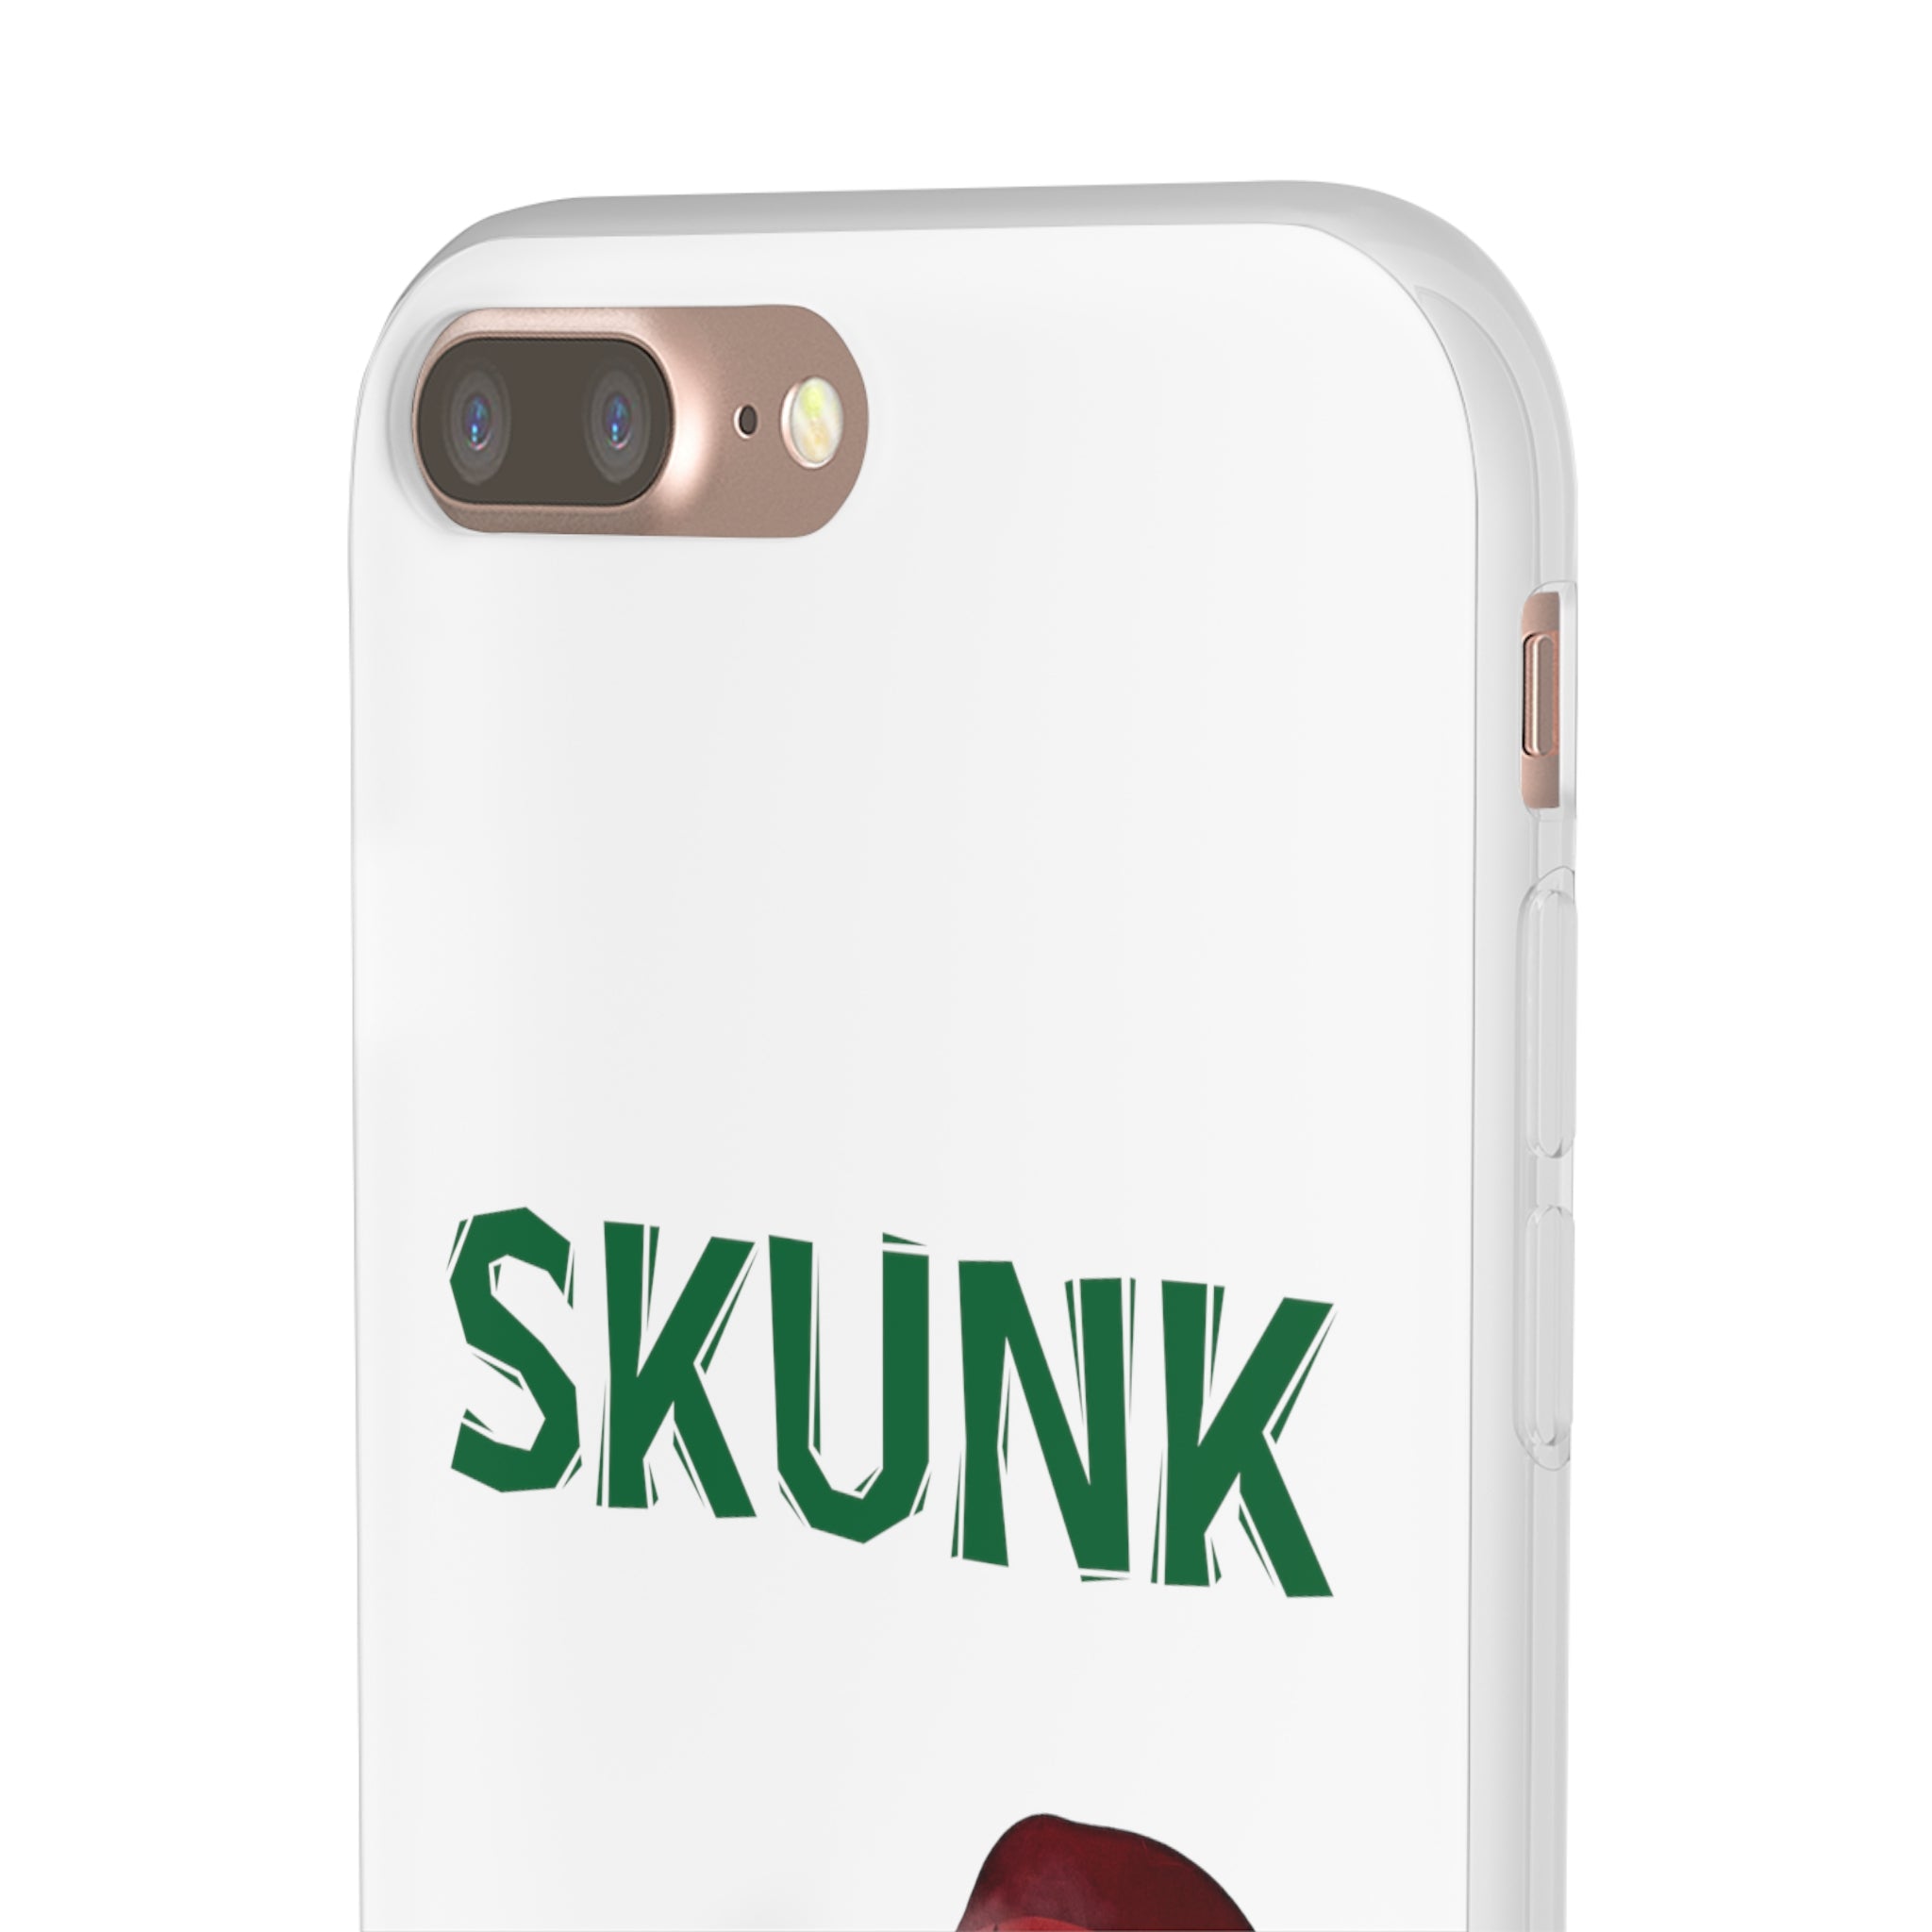 CHIP SKUNK Flexi Phone Cases